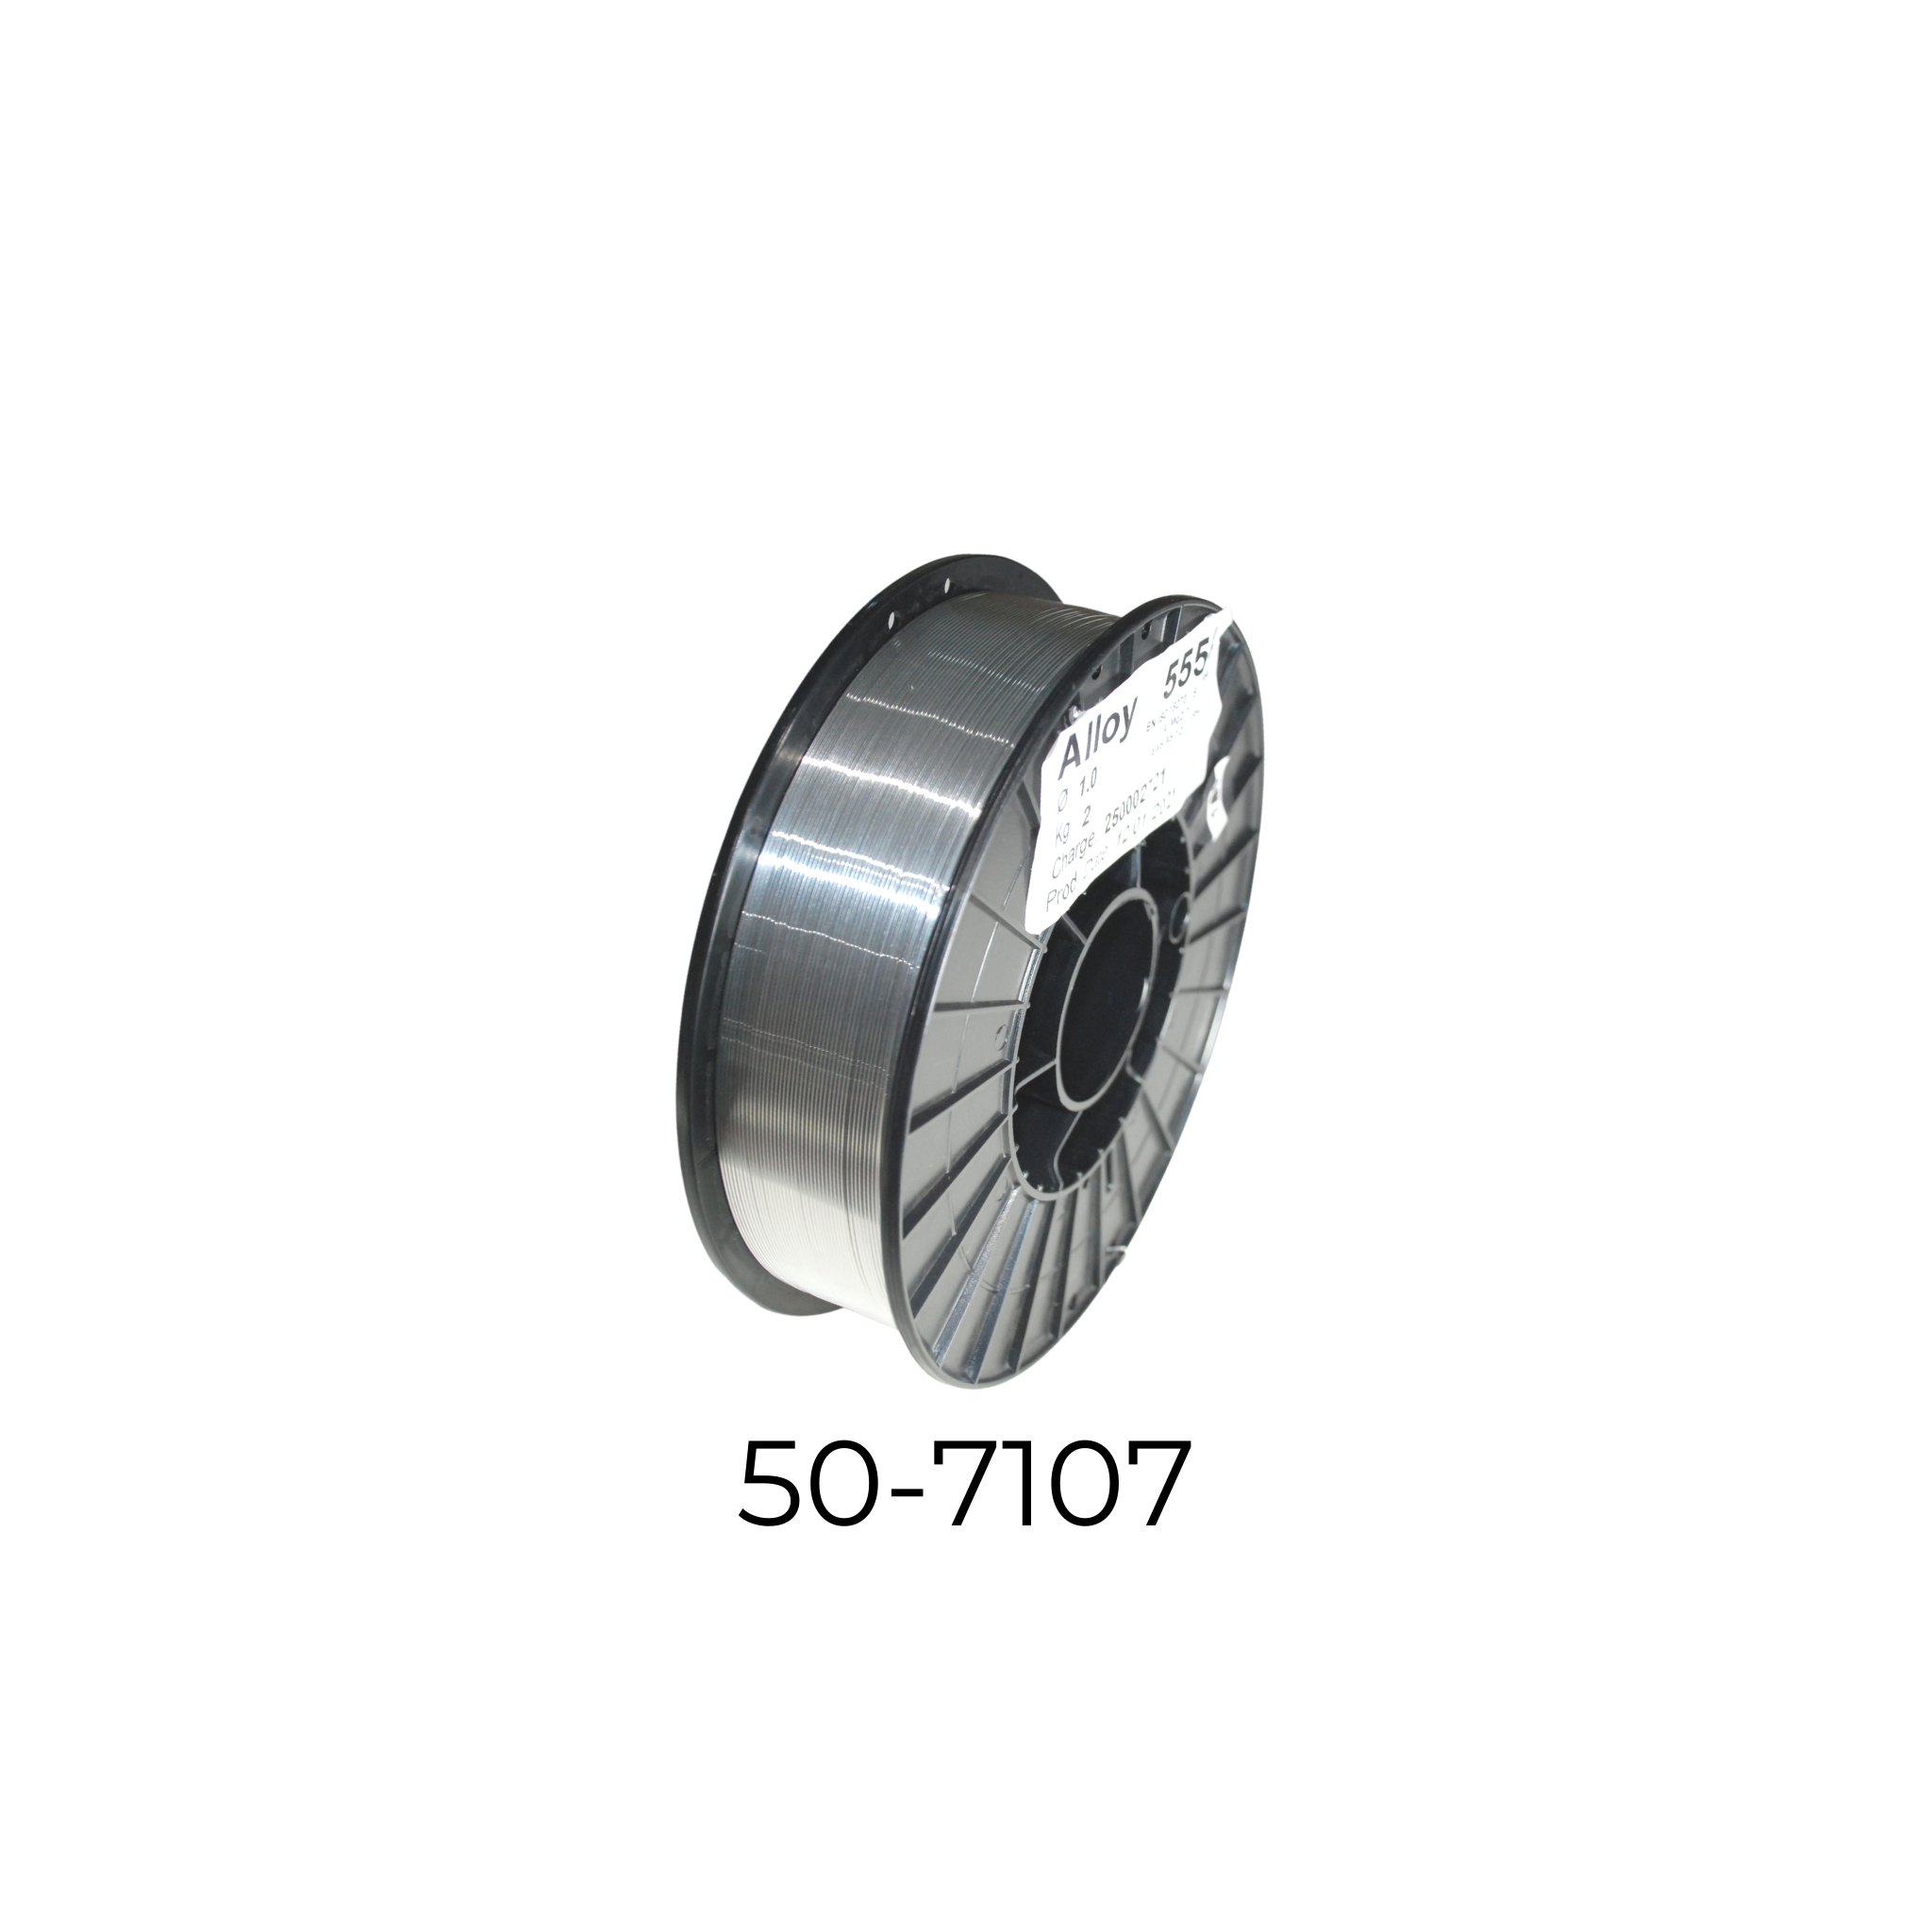 Wire Spool - Aluminum - 5554 - 1.2 mm - 0.047 in - 2 kg - 50-7117 – Pro  Spot International